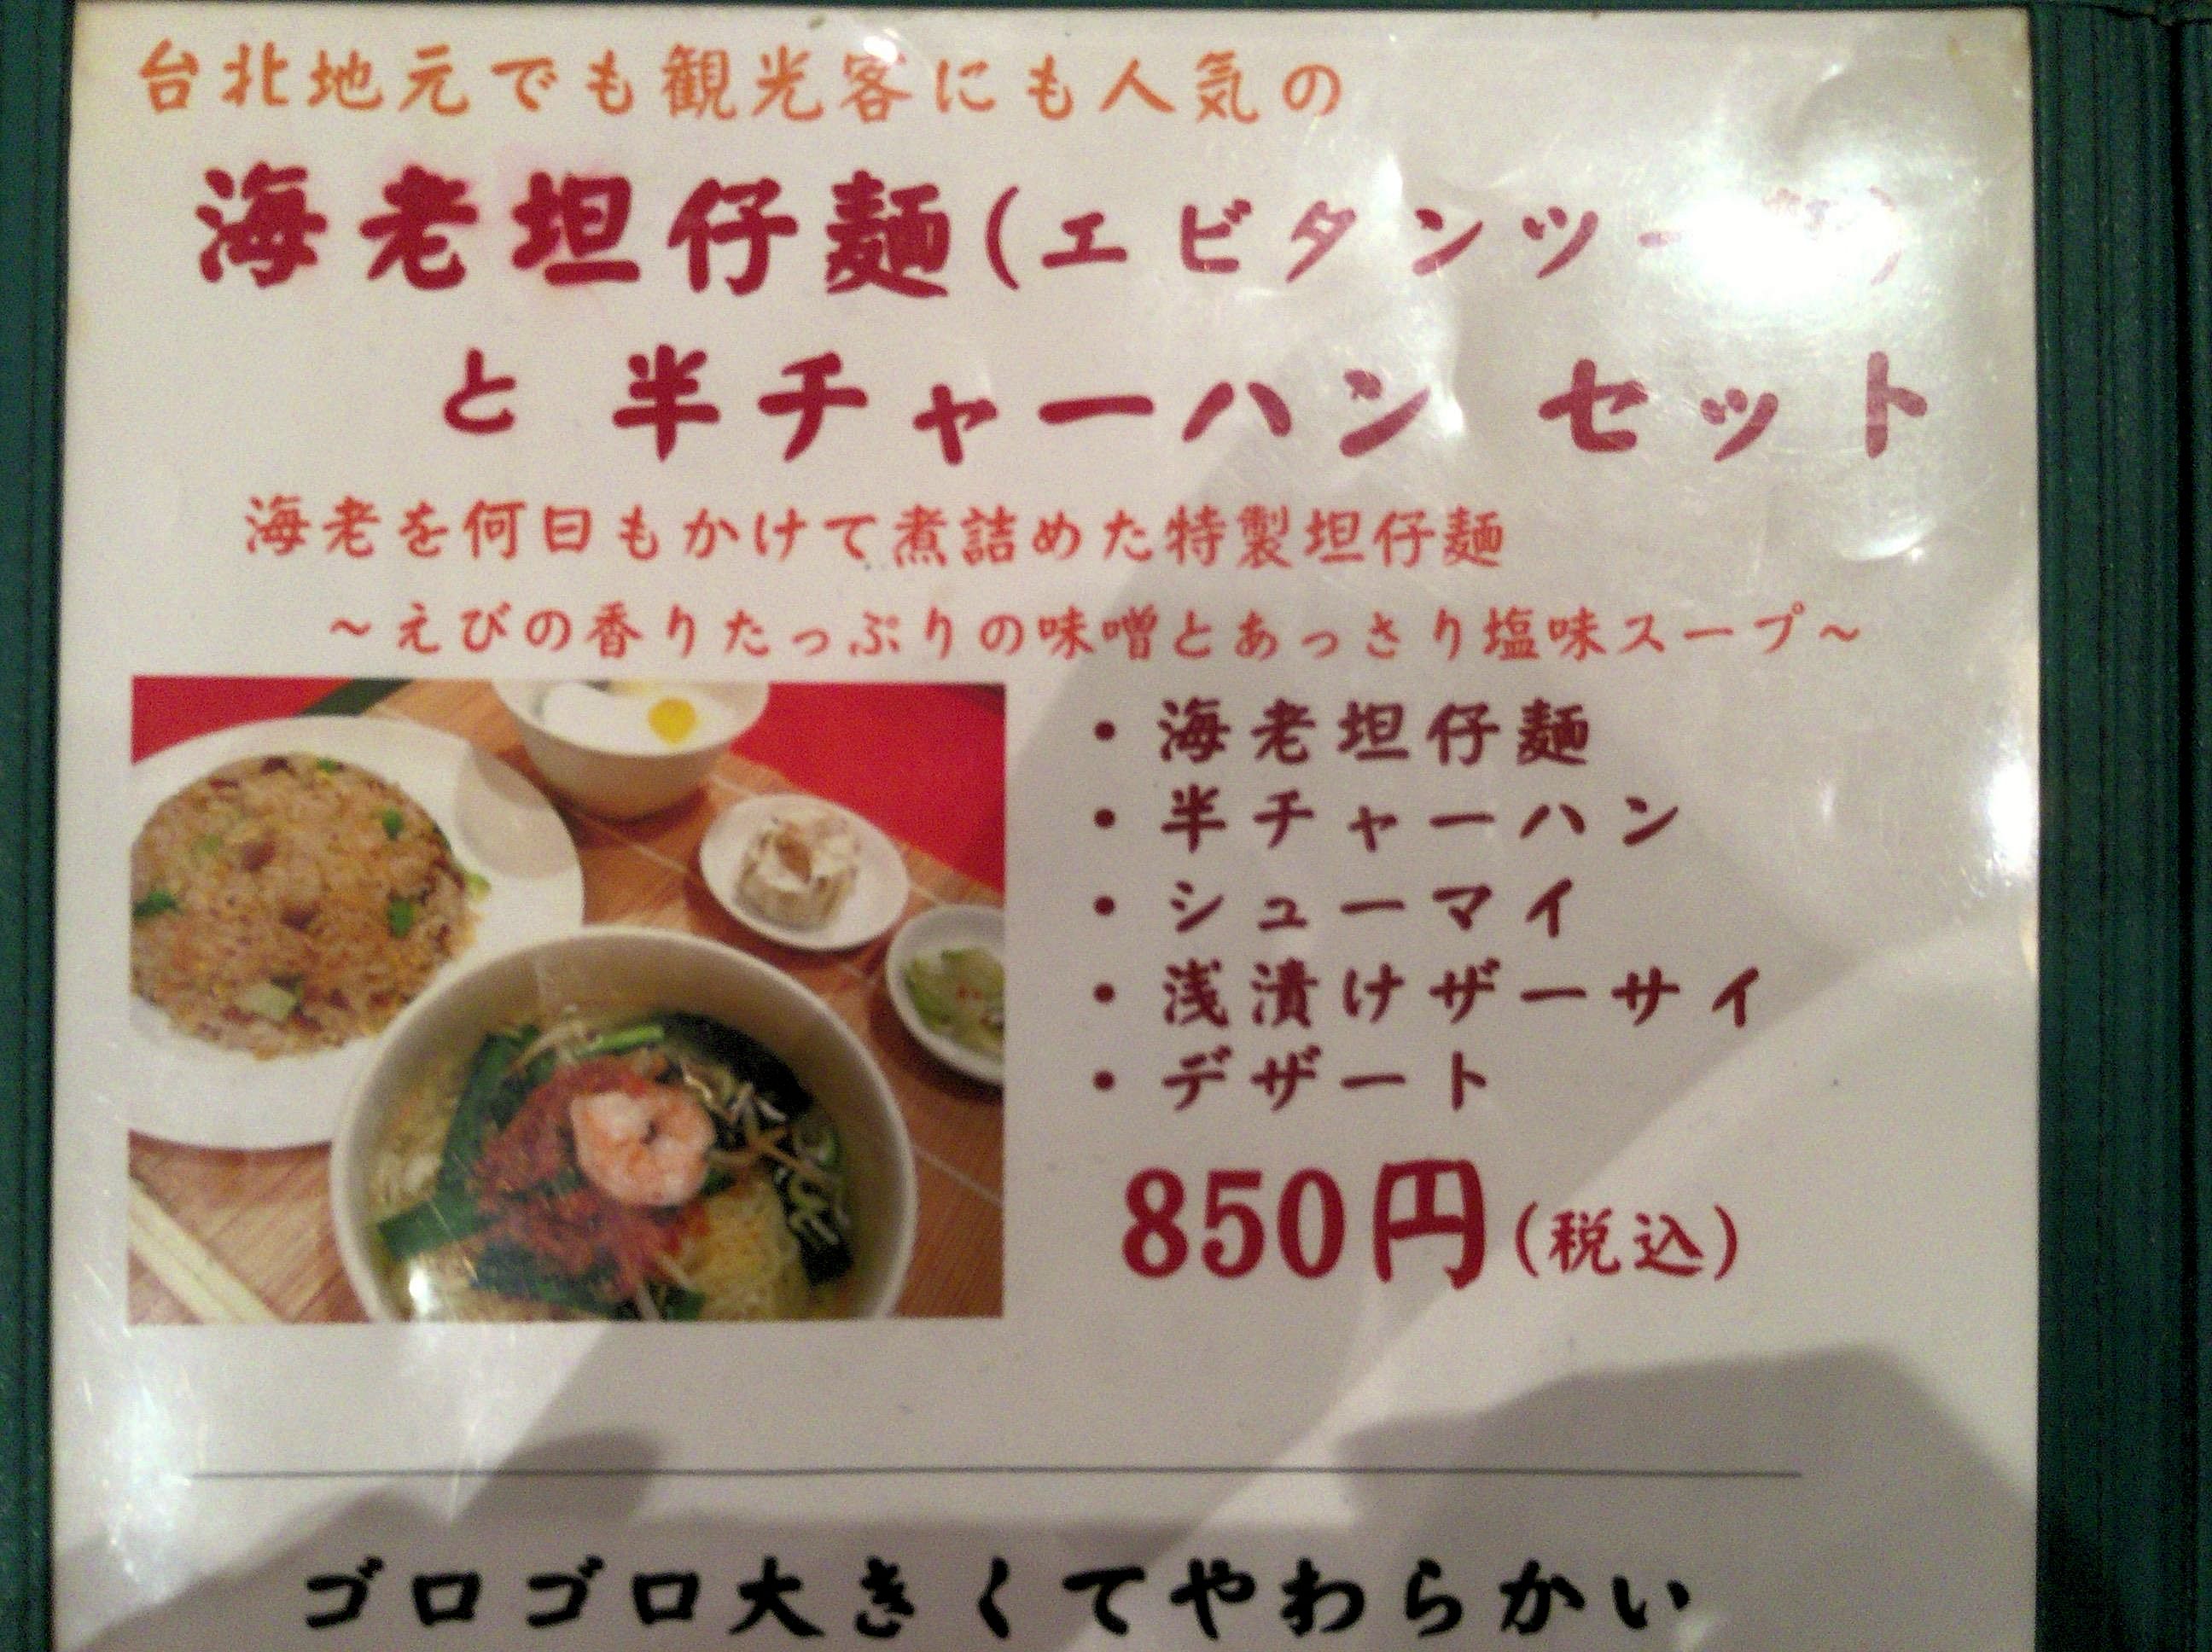 赤羽の麒麟中華大食堂で 台湾名物 担仔麺 に出会う 本場の味がここに